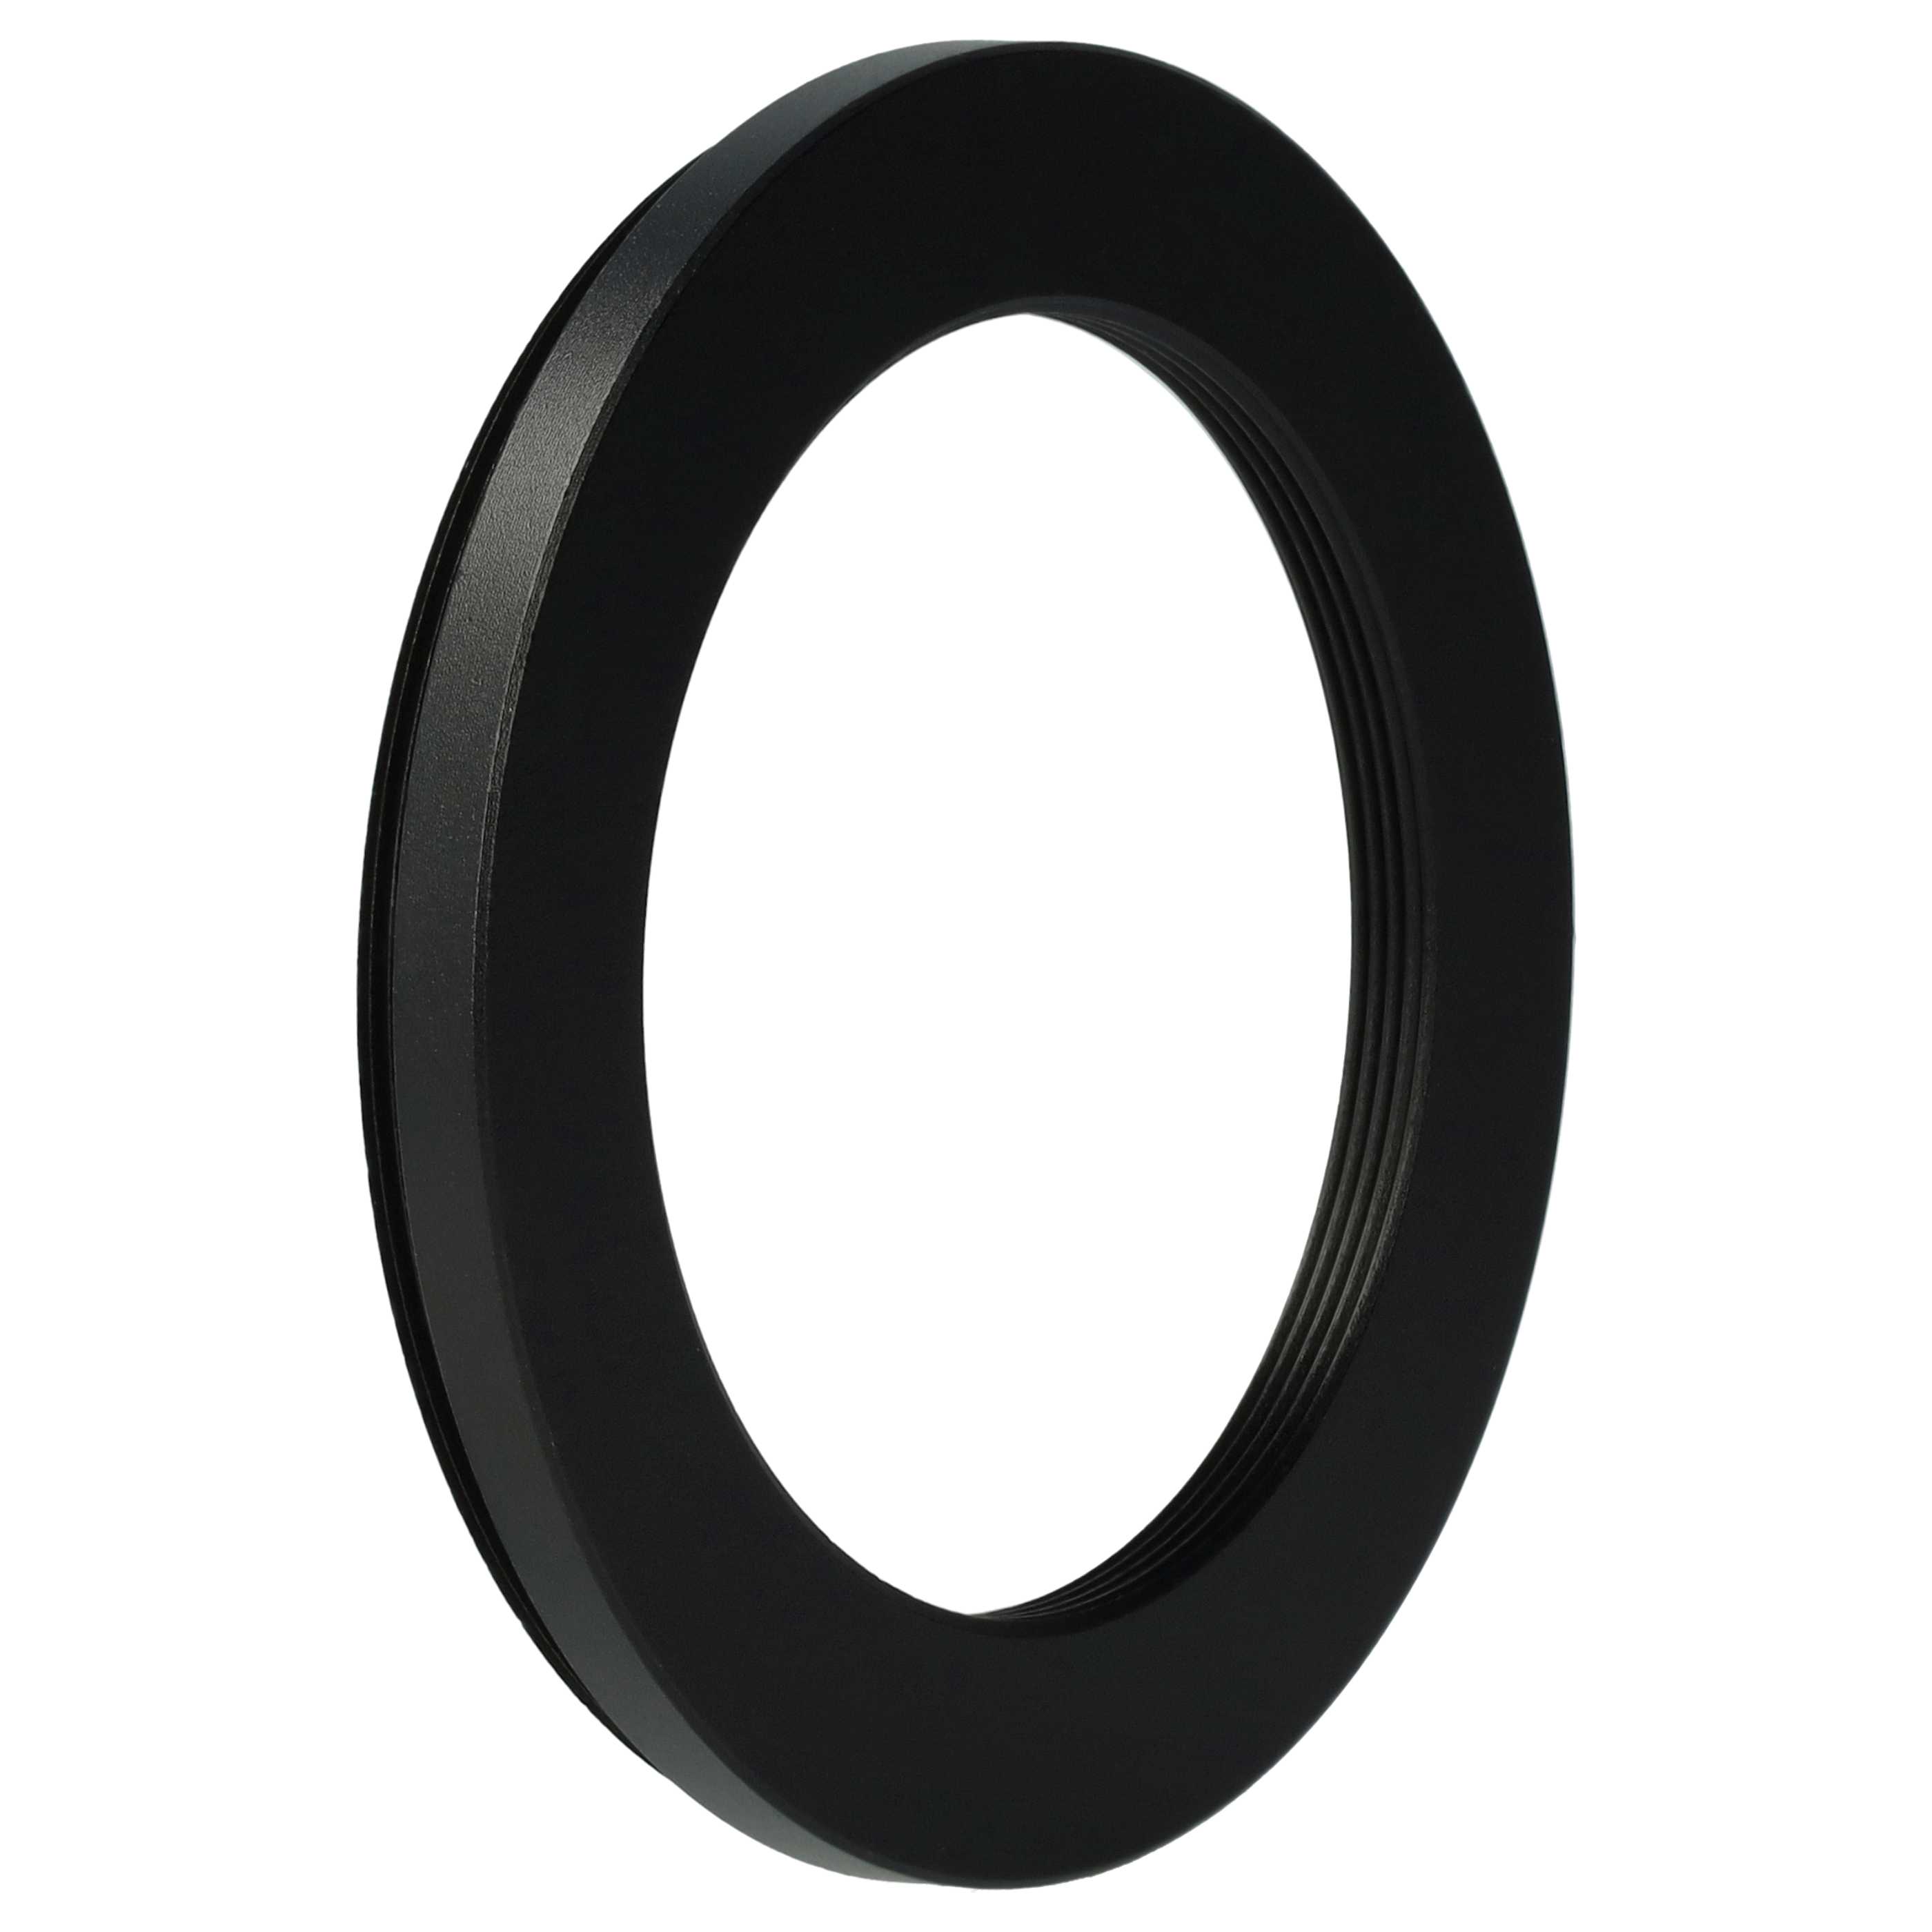 Redukcja filtrowa adapter Step-Down 58 mm - 43 mm pasująca do obiektywu - metal, czarny